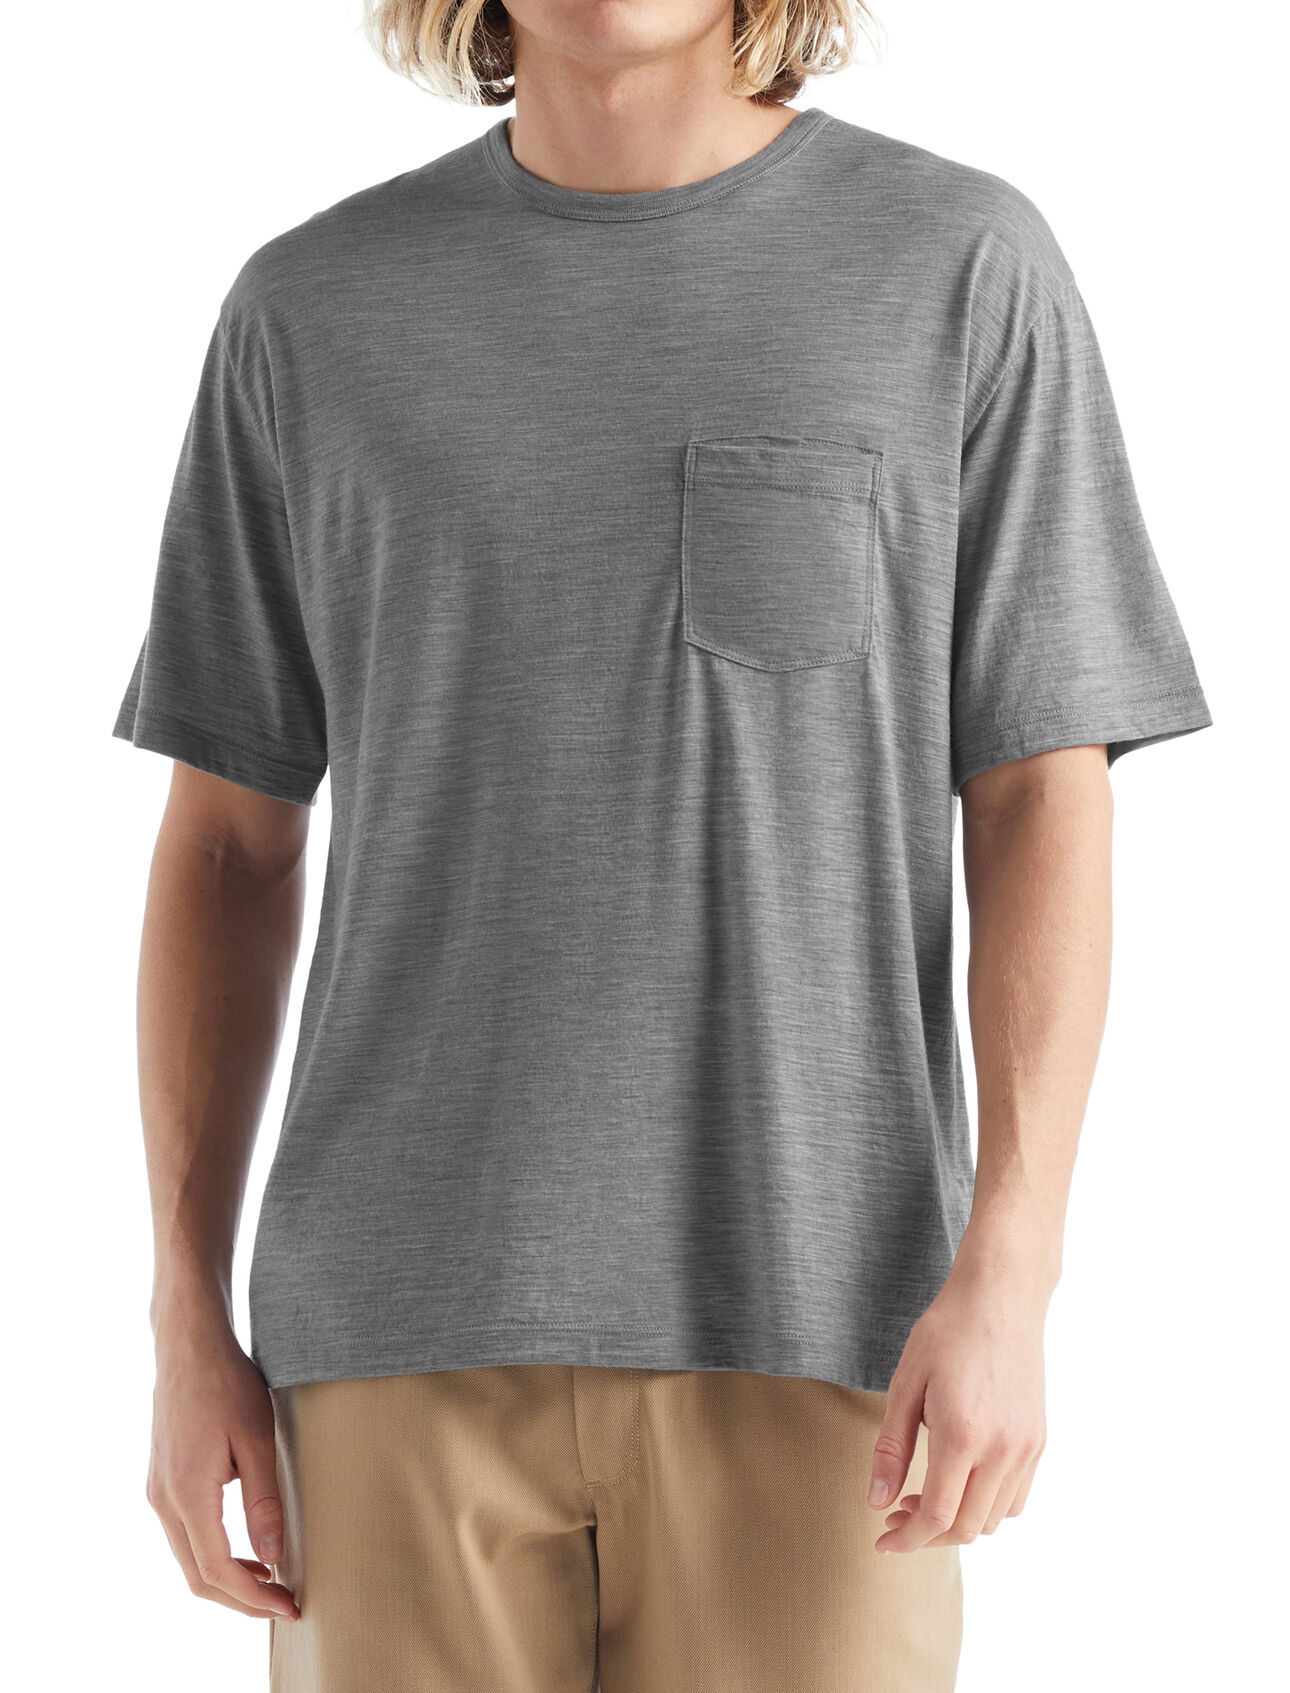 Heren Granary T-shirt met korte mouwen en borstzakje van merinowol De Granary is een klassiek T-shirt met korte mouwen en borstzakje. De top heeft een relaxte pasvorm en is gemaakt van zachte, ademende stof van 100% merinowol. Het stijlvolle T-shirt biedt een alledaags comfort. 